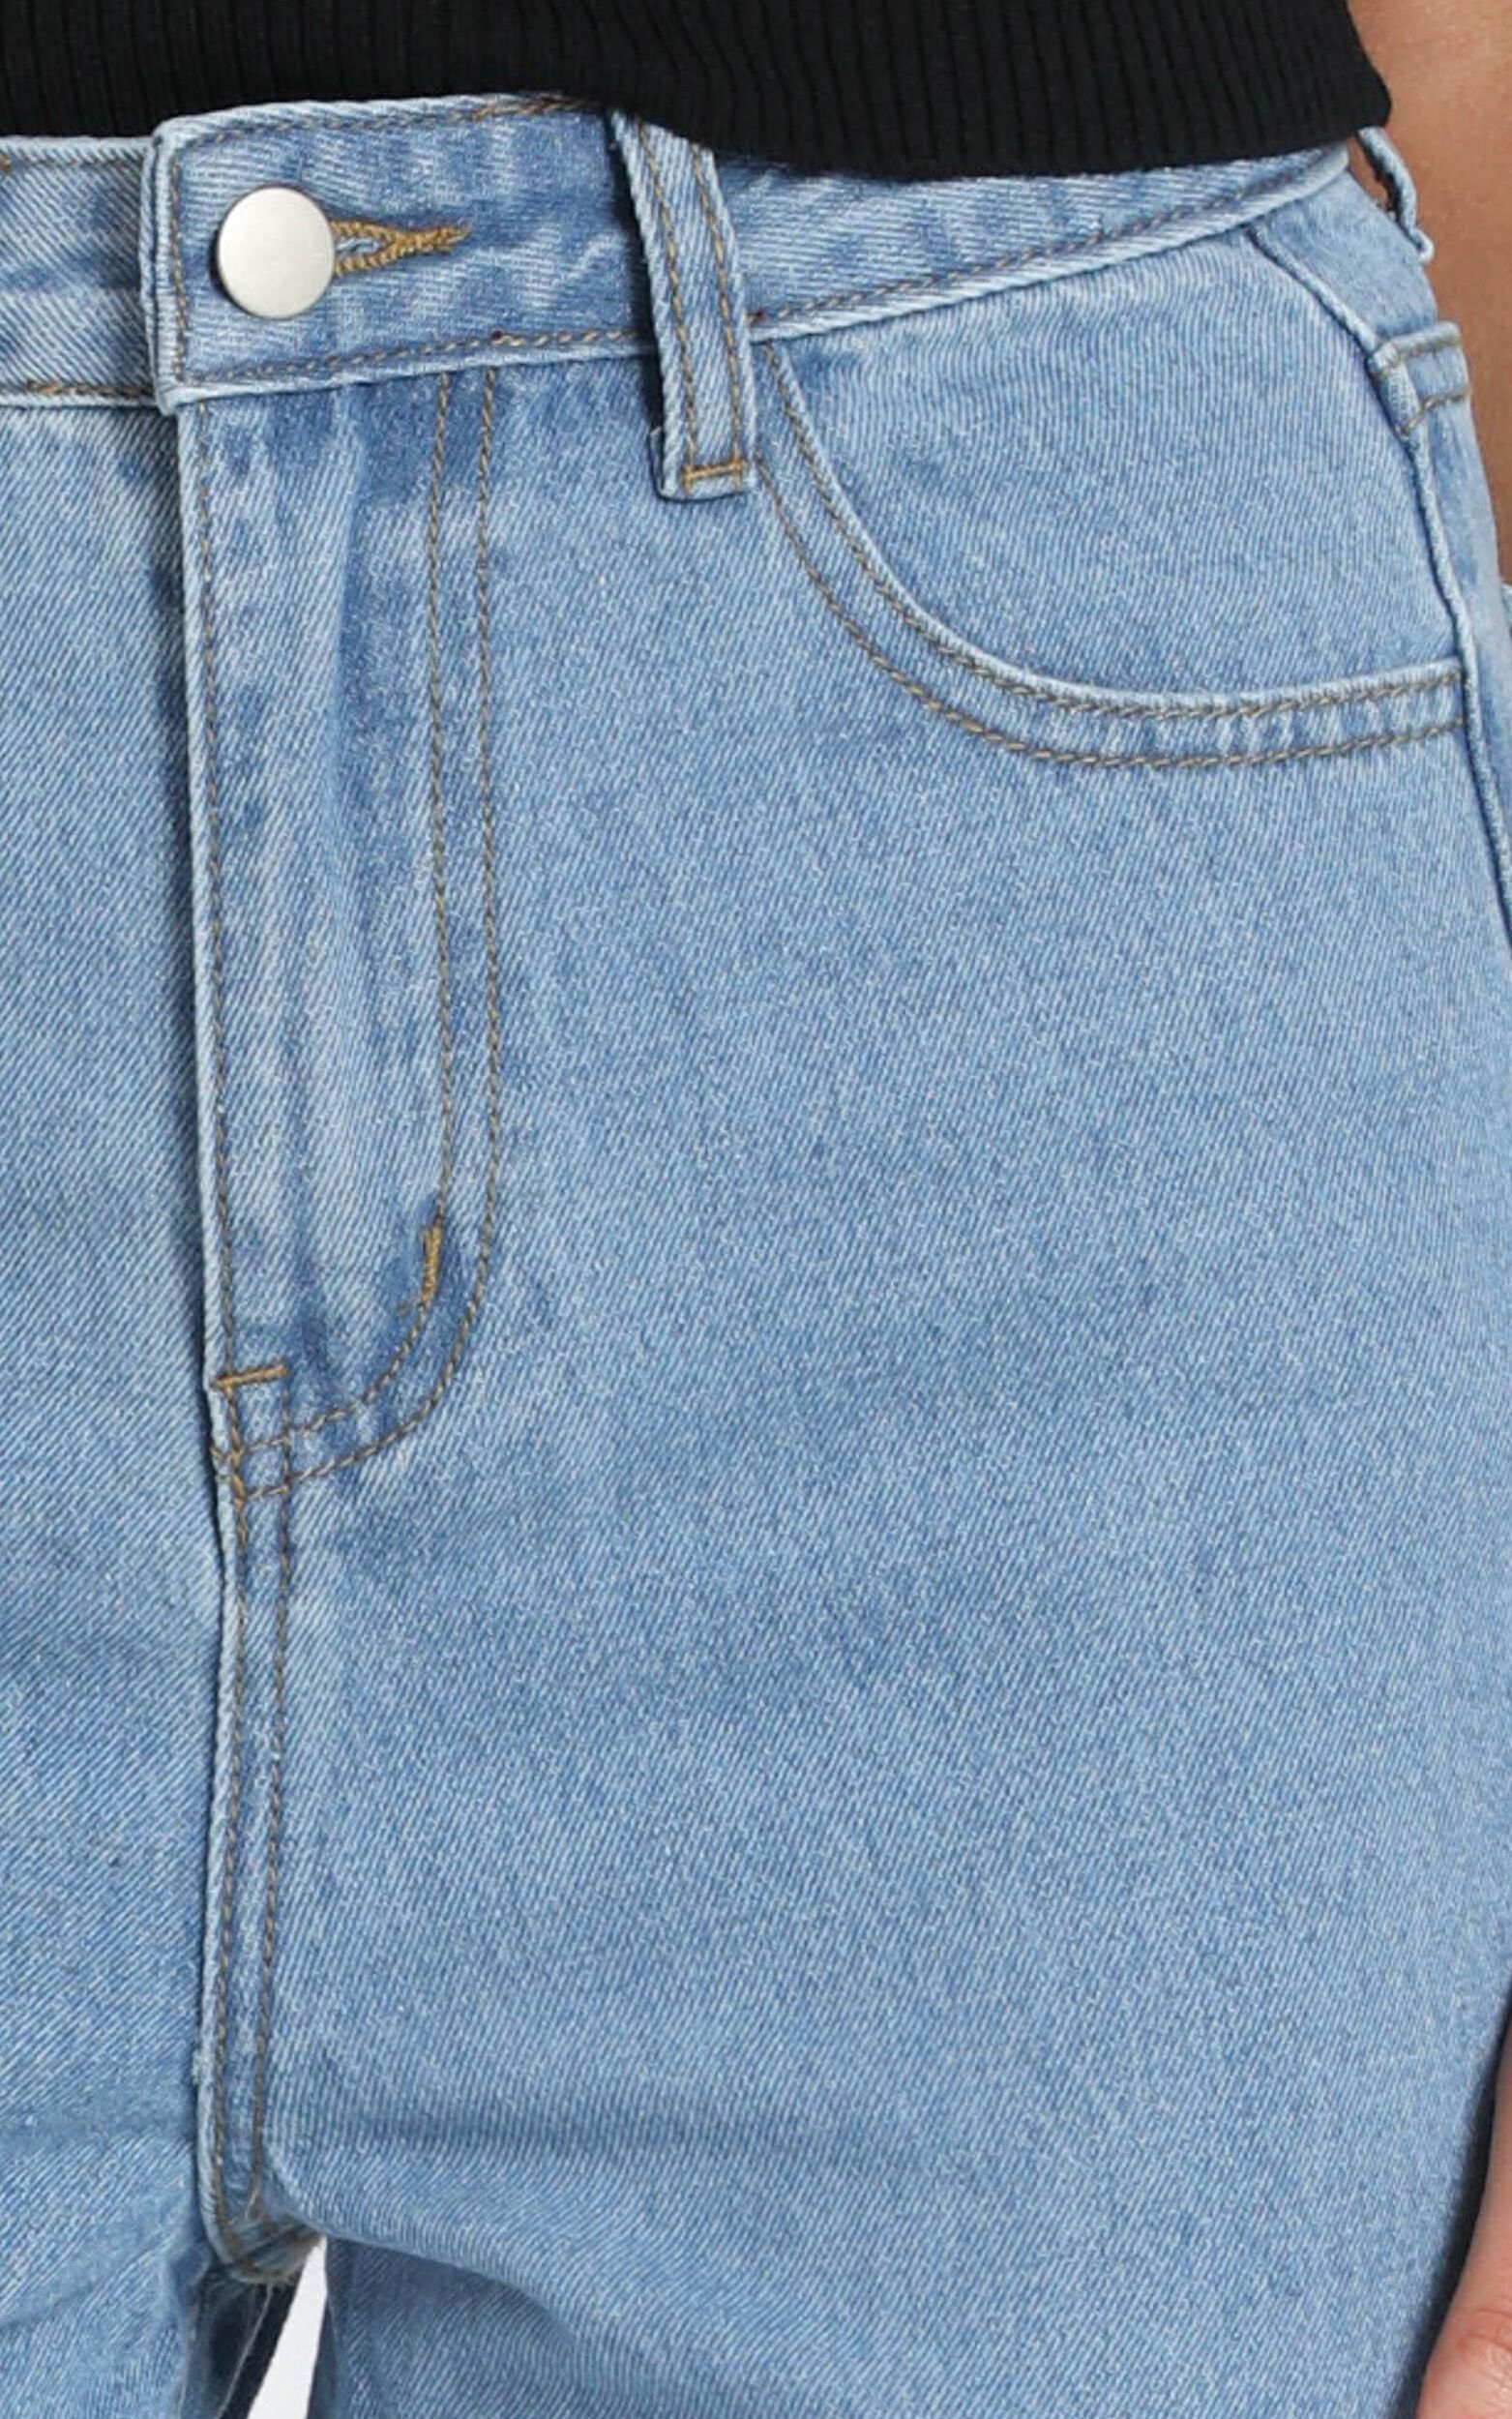 Bec Jeans In Light Vintage Wash Denim | Showpo